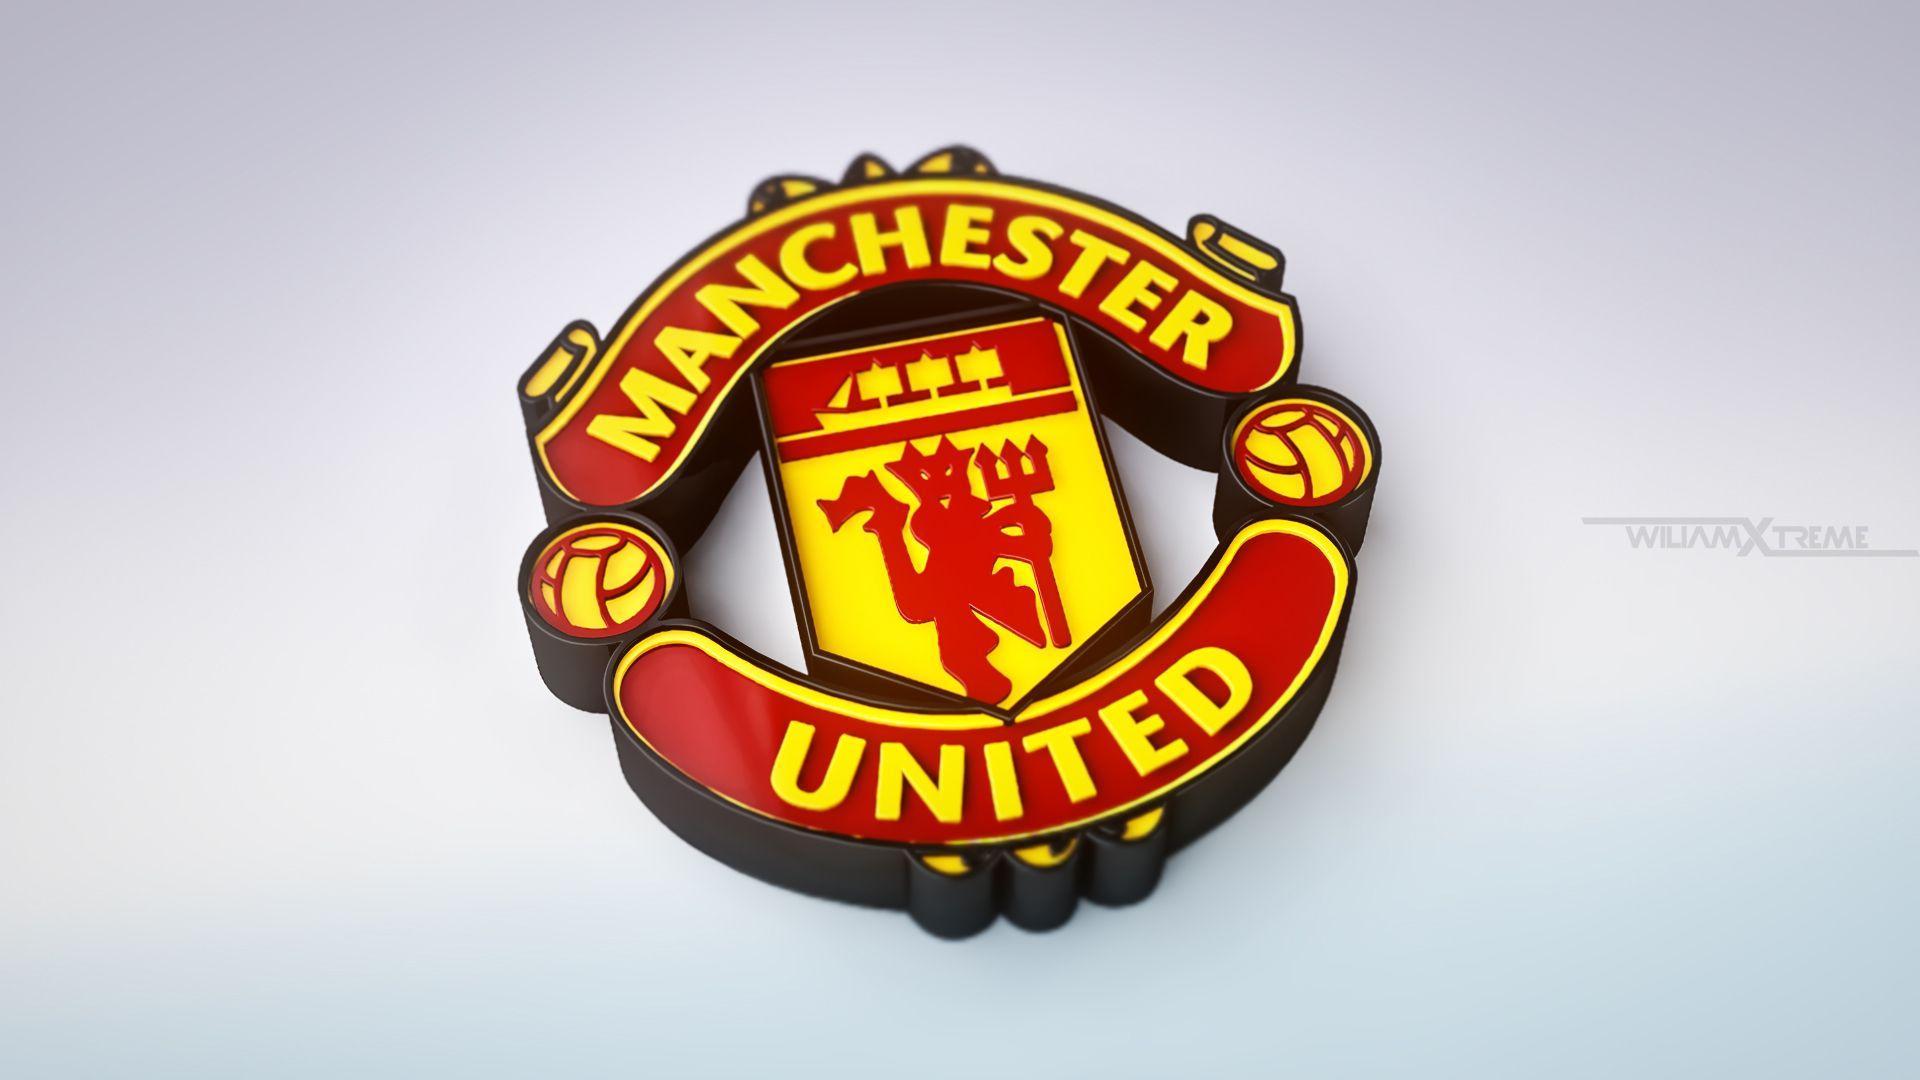 Manchester United Logo 3D Image Wallpaper Desktop Background Free